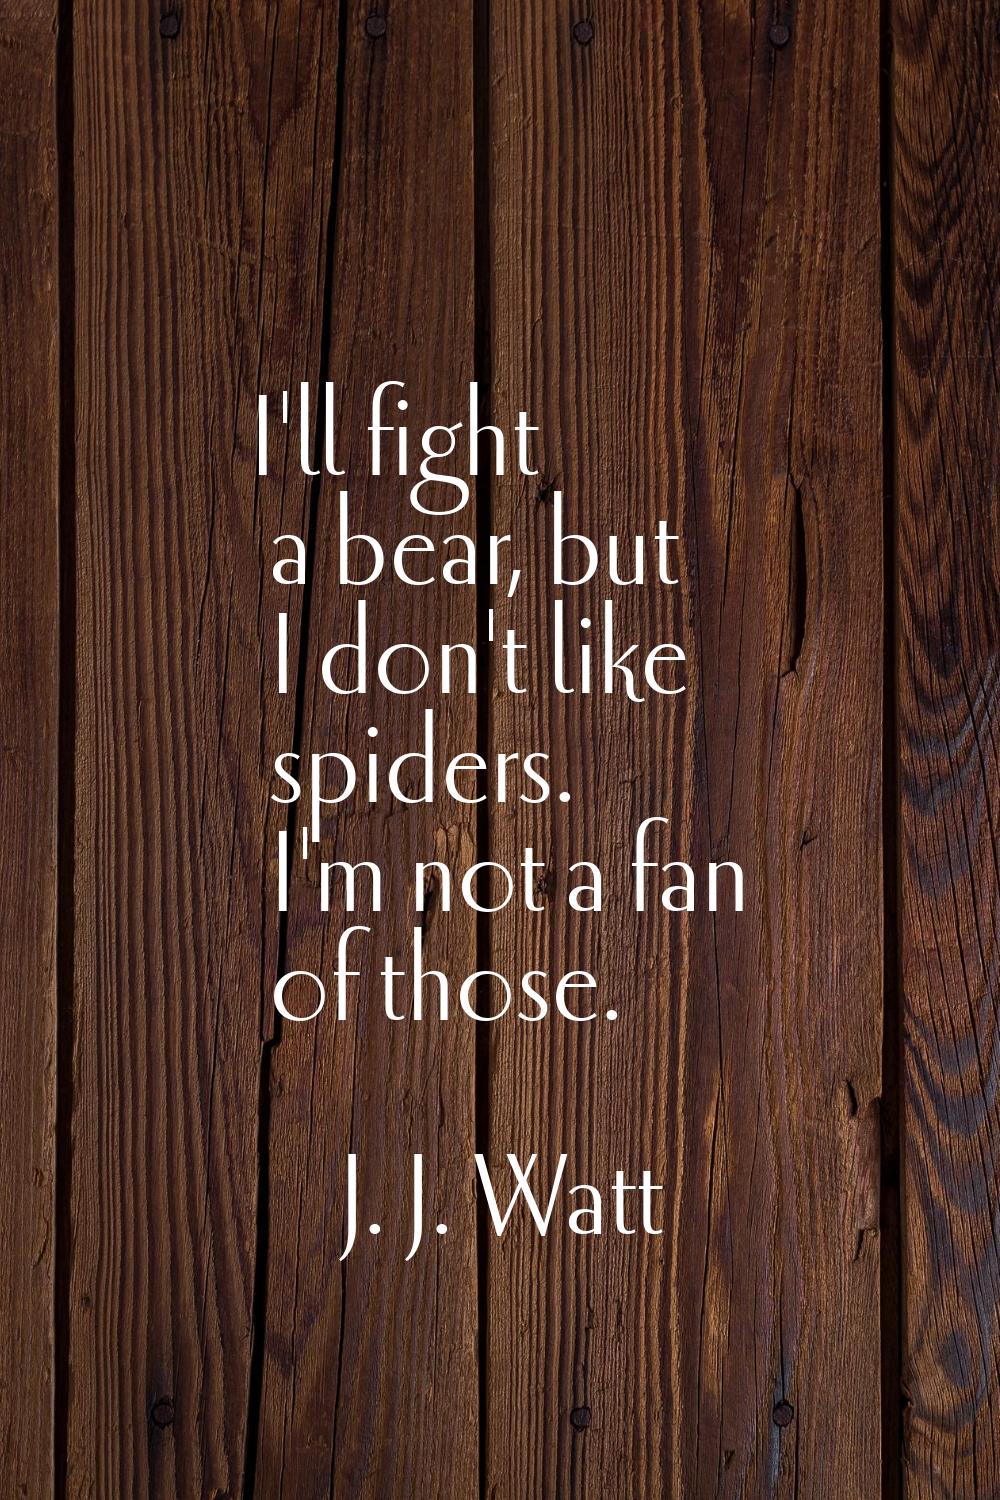 I'll fight a bear, but I don't like spiders. I'm not a fan of those.